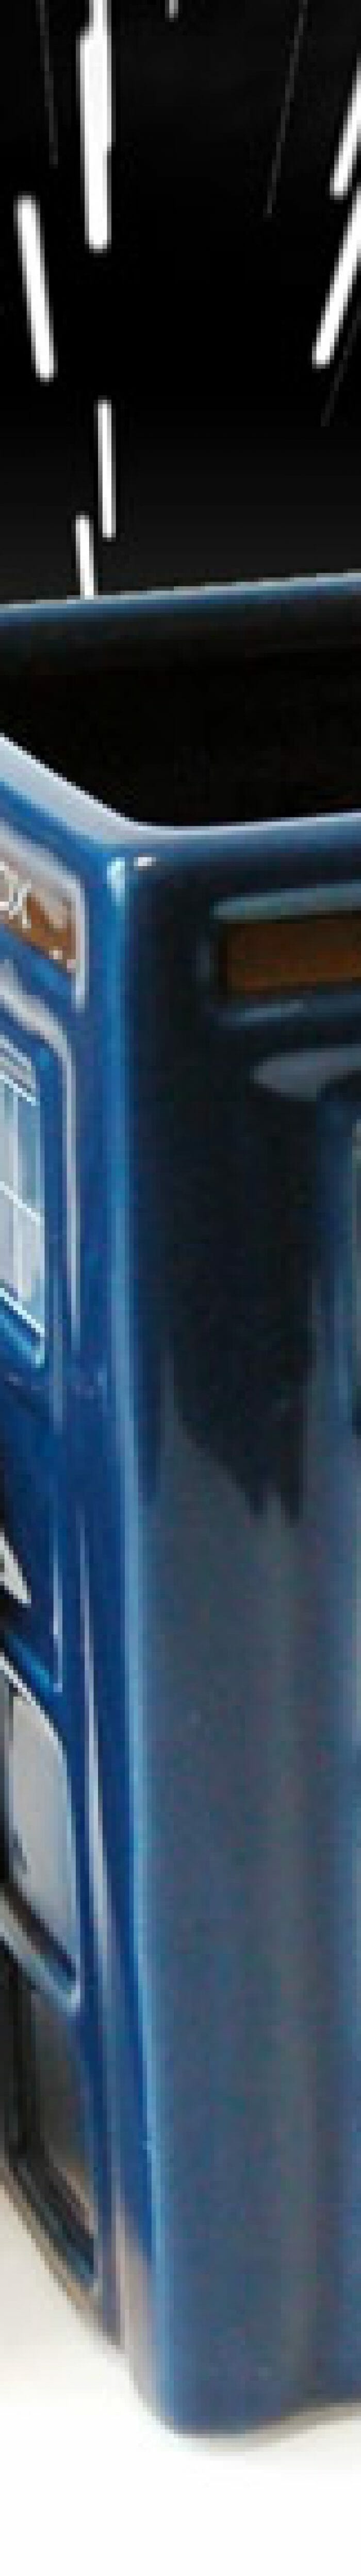 Caneca Tardis inspirada na série Doctor Who